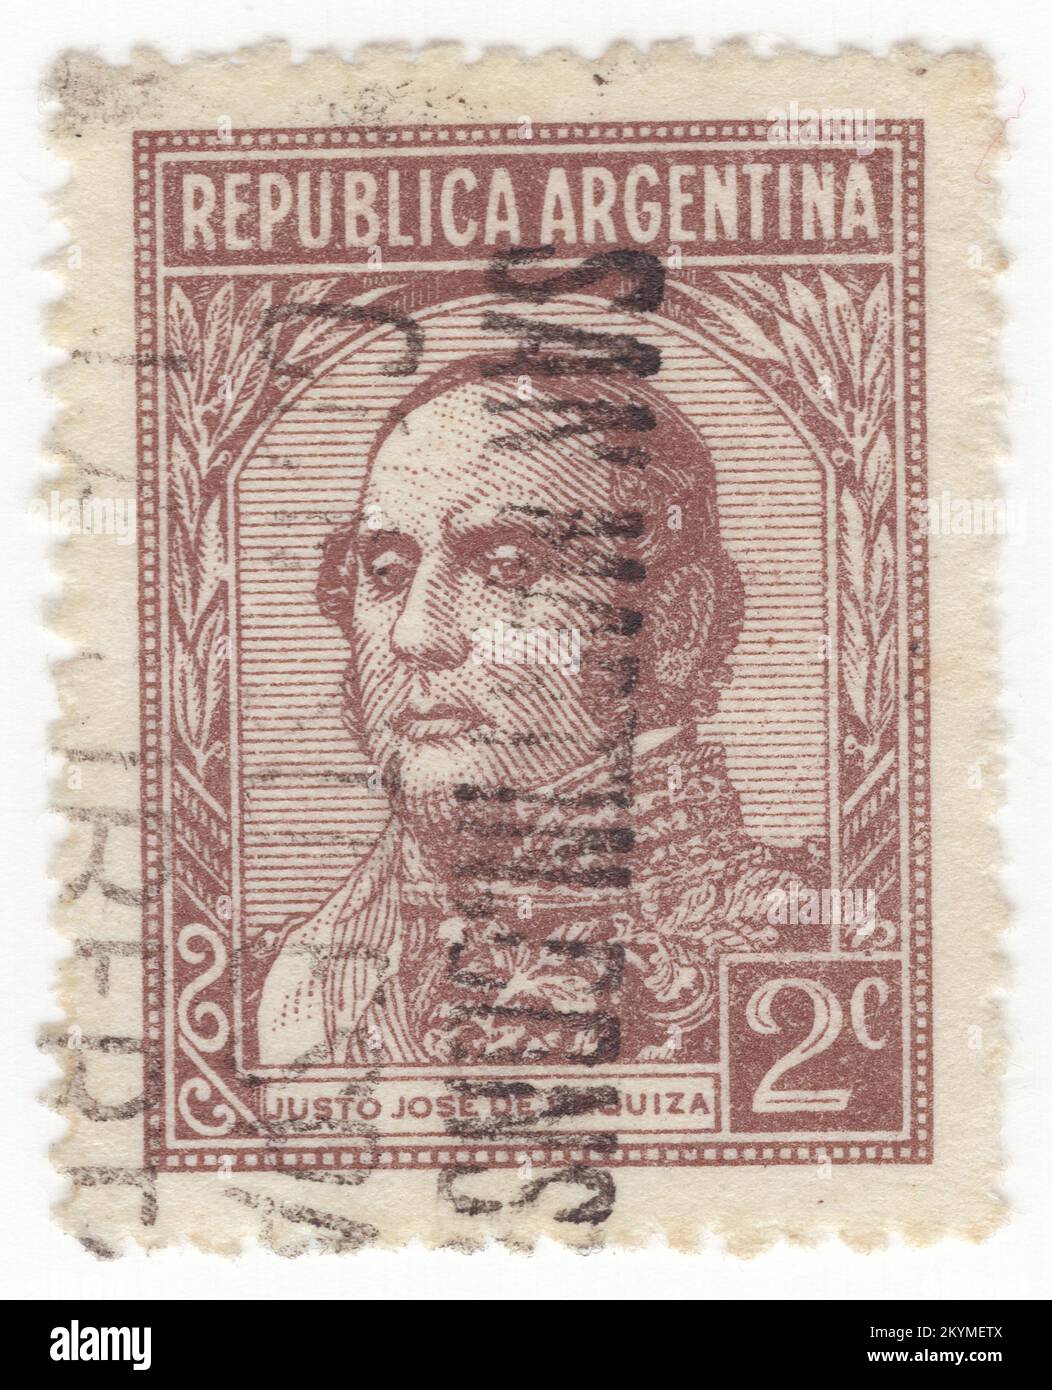 ARGENTINIEN - 1935: Dunkelbraune Briefmarke von 2 Centavos mit Porträt von Urquiza (Justo José de Urquiza y García), argentinischer General und Politiker, der von 1854 bis 1860 Präsident des argentinischen Konföderats war. Wie viele andere argentinische Patrioten des 19. Jahrhunderts war Urquiza ein Freimaurer. Sein imposanter Palacio San Jose wurde so interpretiert, dass er viele Freimaurersymbole enthält, „um die Konstruktion seines anderen Werks, des argentinischen Staates, zu symbolisieren und widerzuspiegeln“. Es gibt viele Straßen, Parks und Plätze in ganz Argentinien Stockfoto